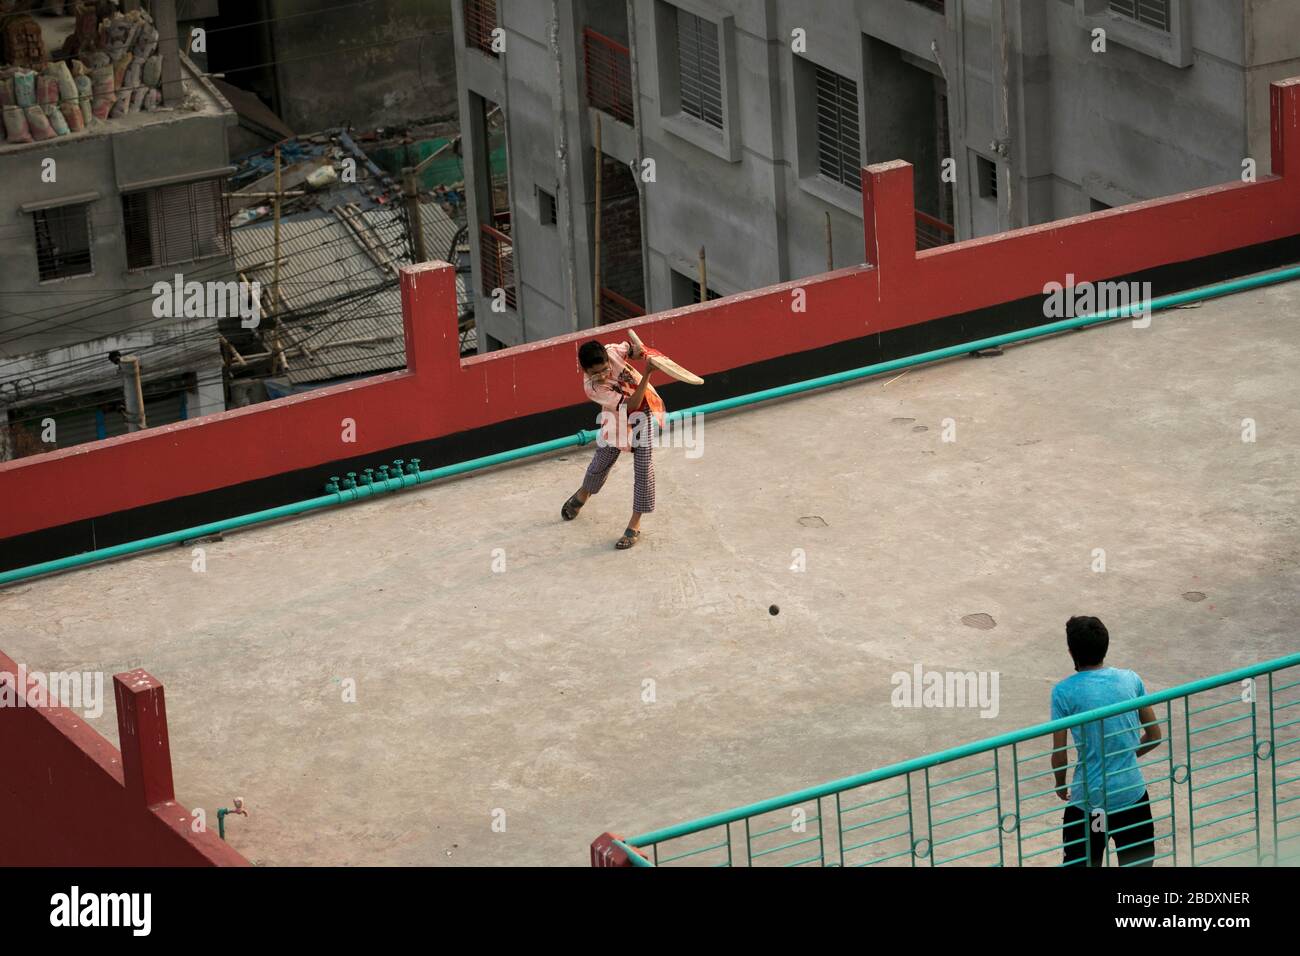 DHAKA, BANGLADESH - APRILE 10: Bambini che giocano a cricket sul tetto di un edificio durante la chiusura a chiave imposta dal governo come misura preventiva contro Foto Stock